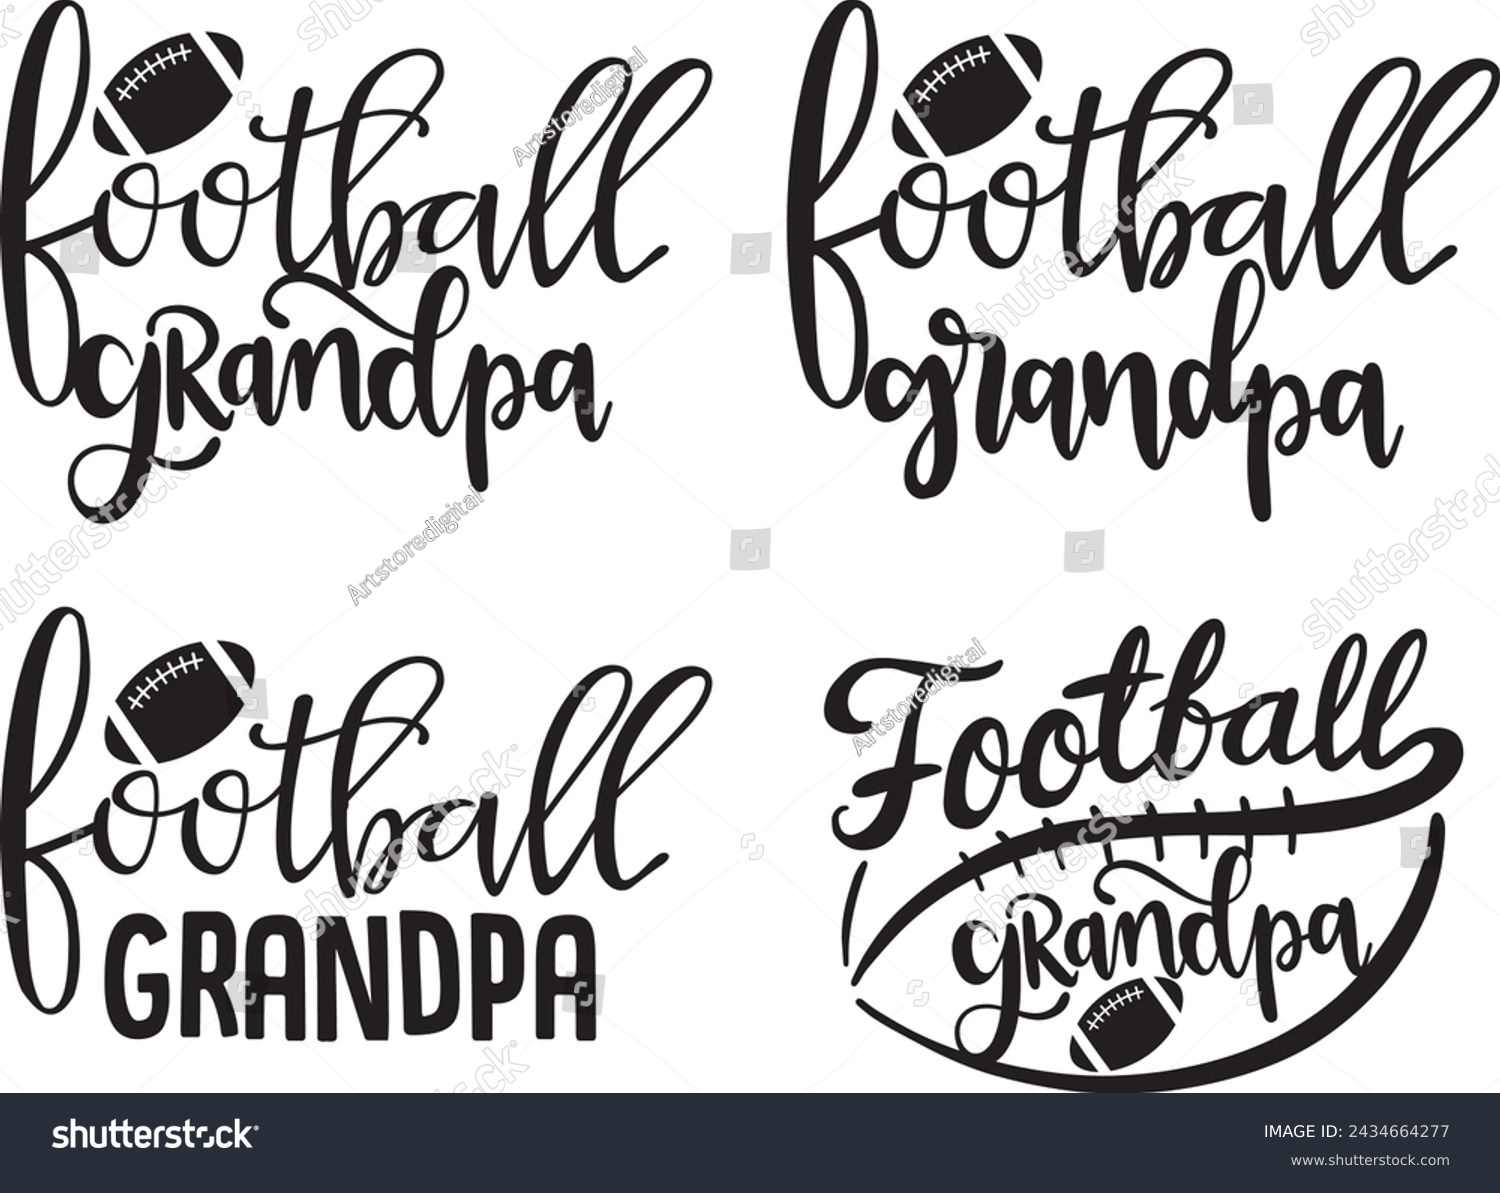 SVG of Football grandpa, american football, football love, football family vector illustration file svg